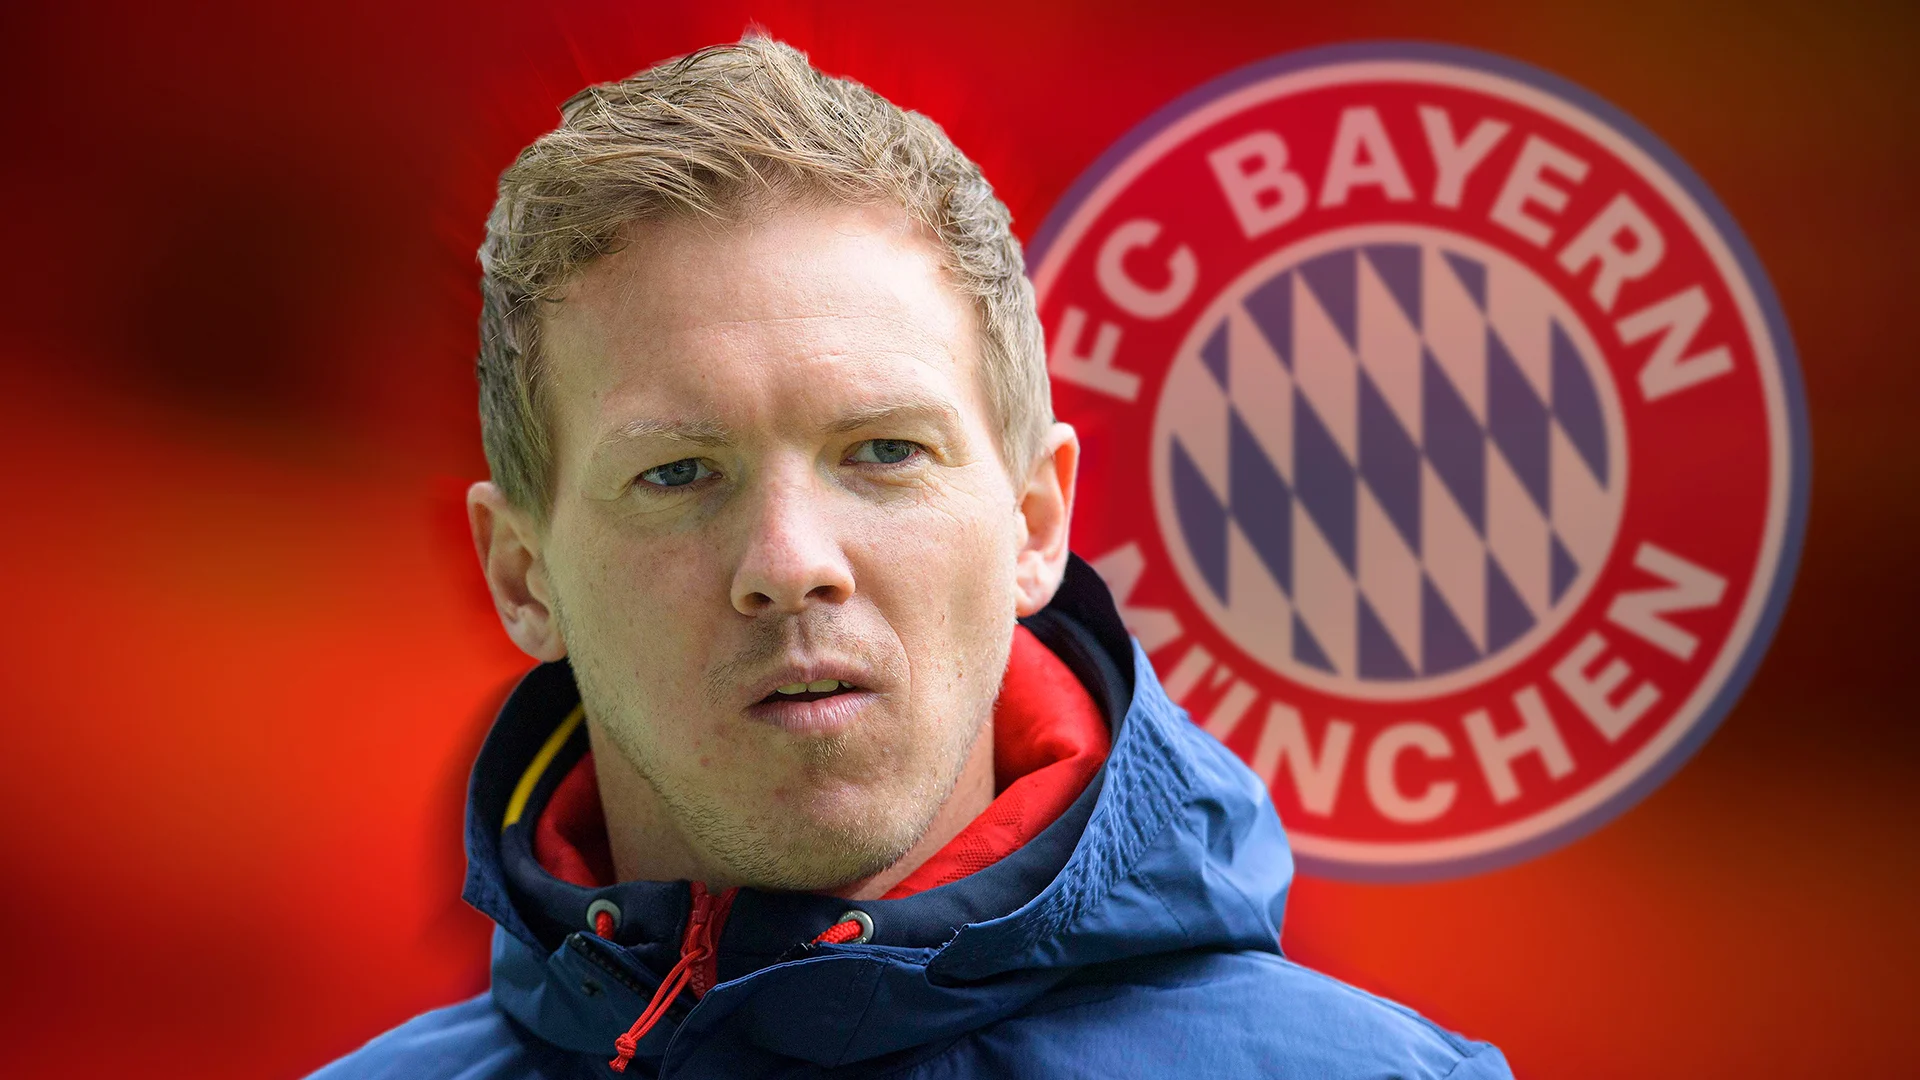 Bayern: Le coach Nagelsmann désigne l’équipe qui va remporter la Ligue des Champions